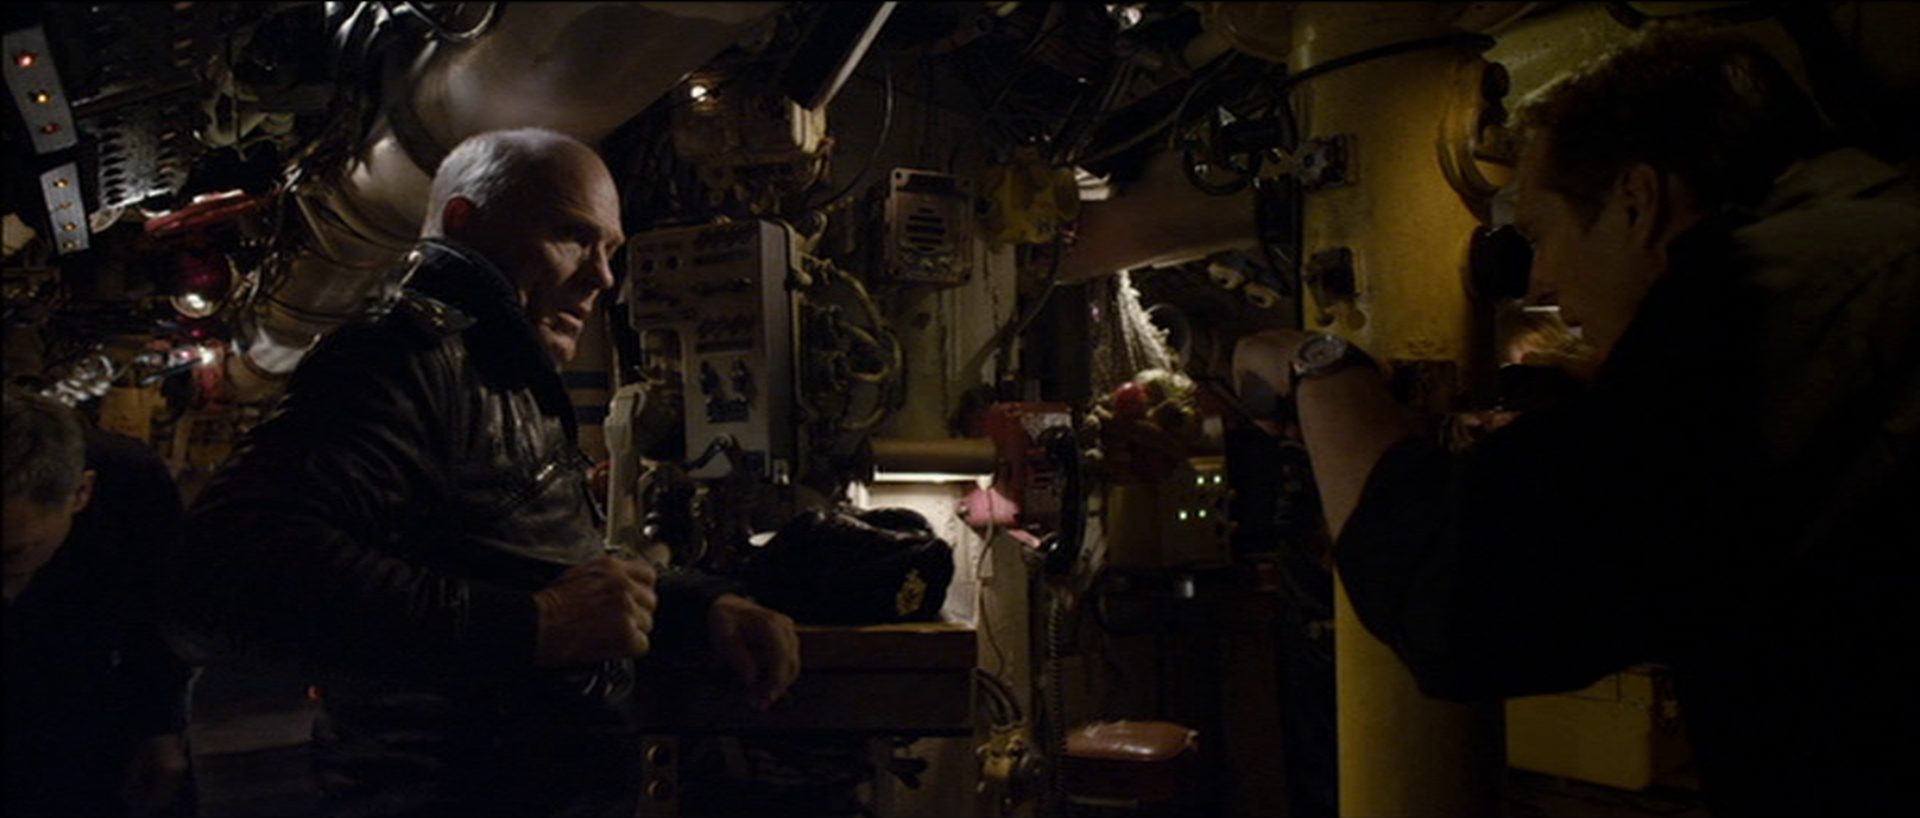 Ed Harris als sowjetischer U-Boot-Kommandant an Bord in beengter Umgebung, ihm gegenüber blickt jemand durch das Periskop.